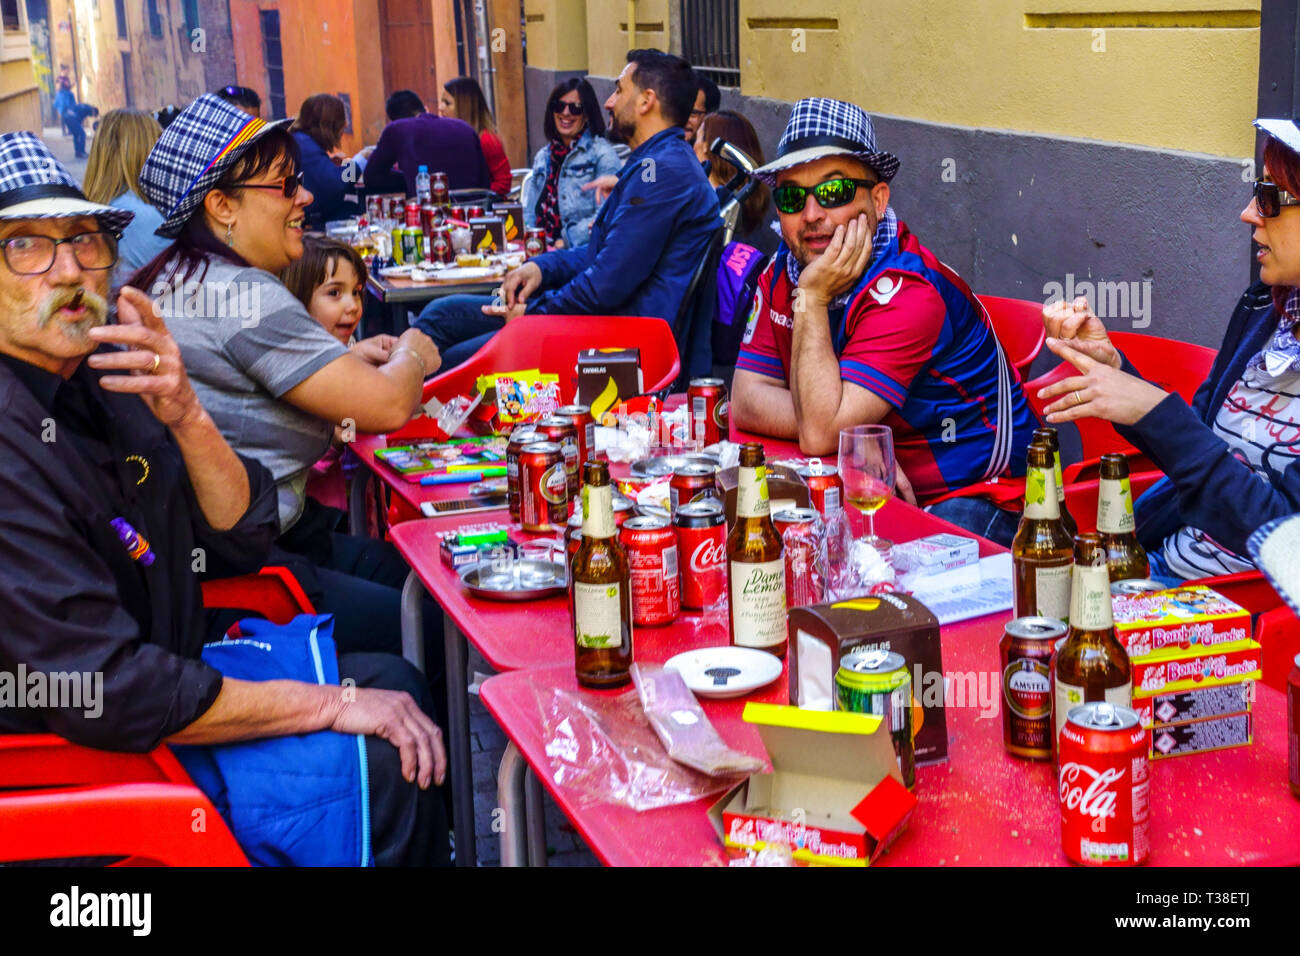 Gli spagnoli celebrano il festival Las Fallas, bar all'aperto, un marciapiede nella città vecchia di Valencia in Spagna popolazione europea anziana gente di stile di vita spagnolo Foto Stock